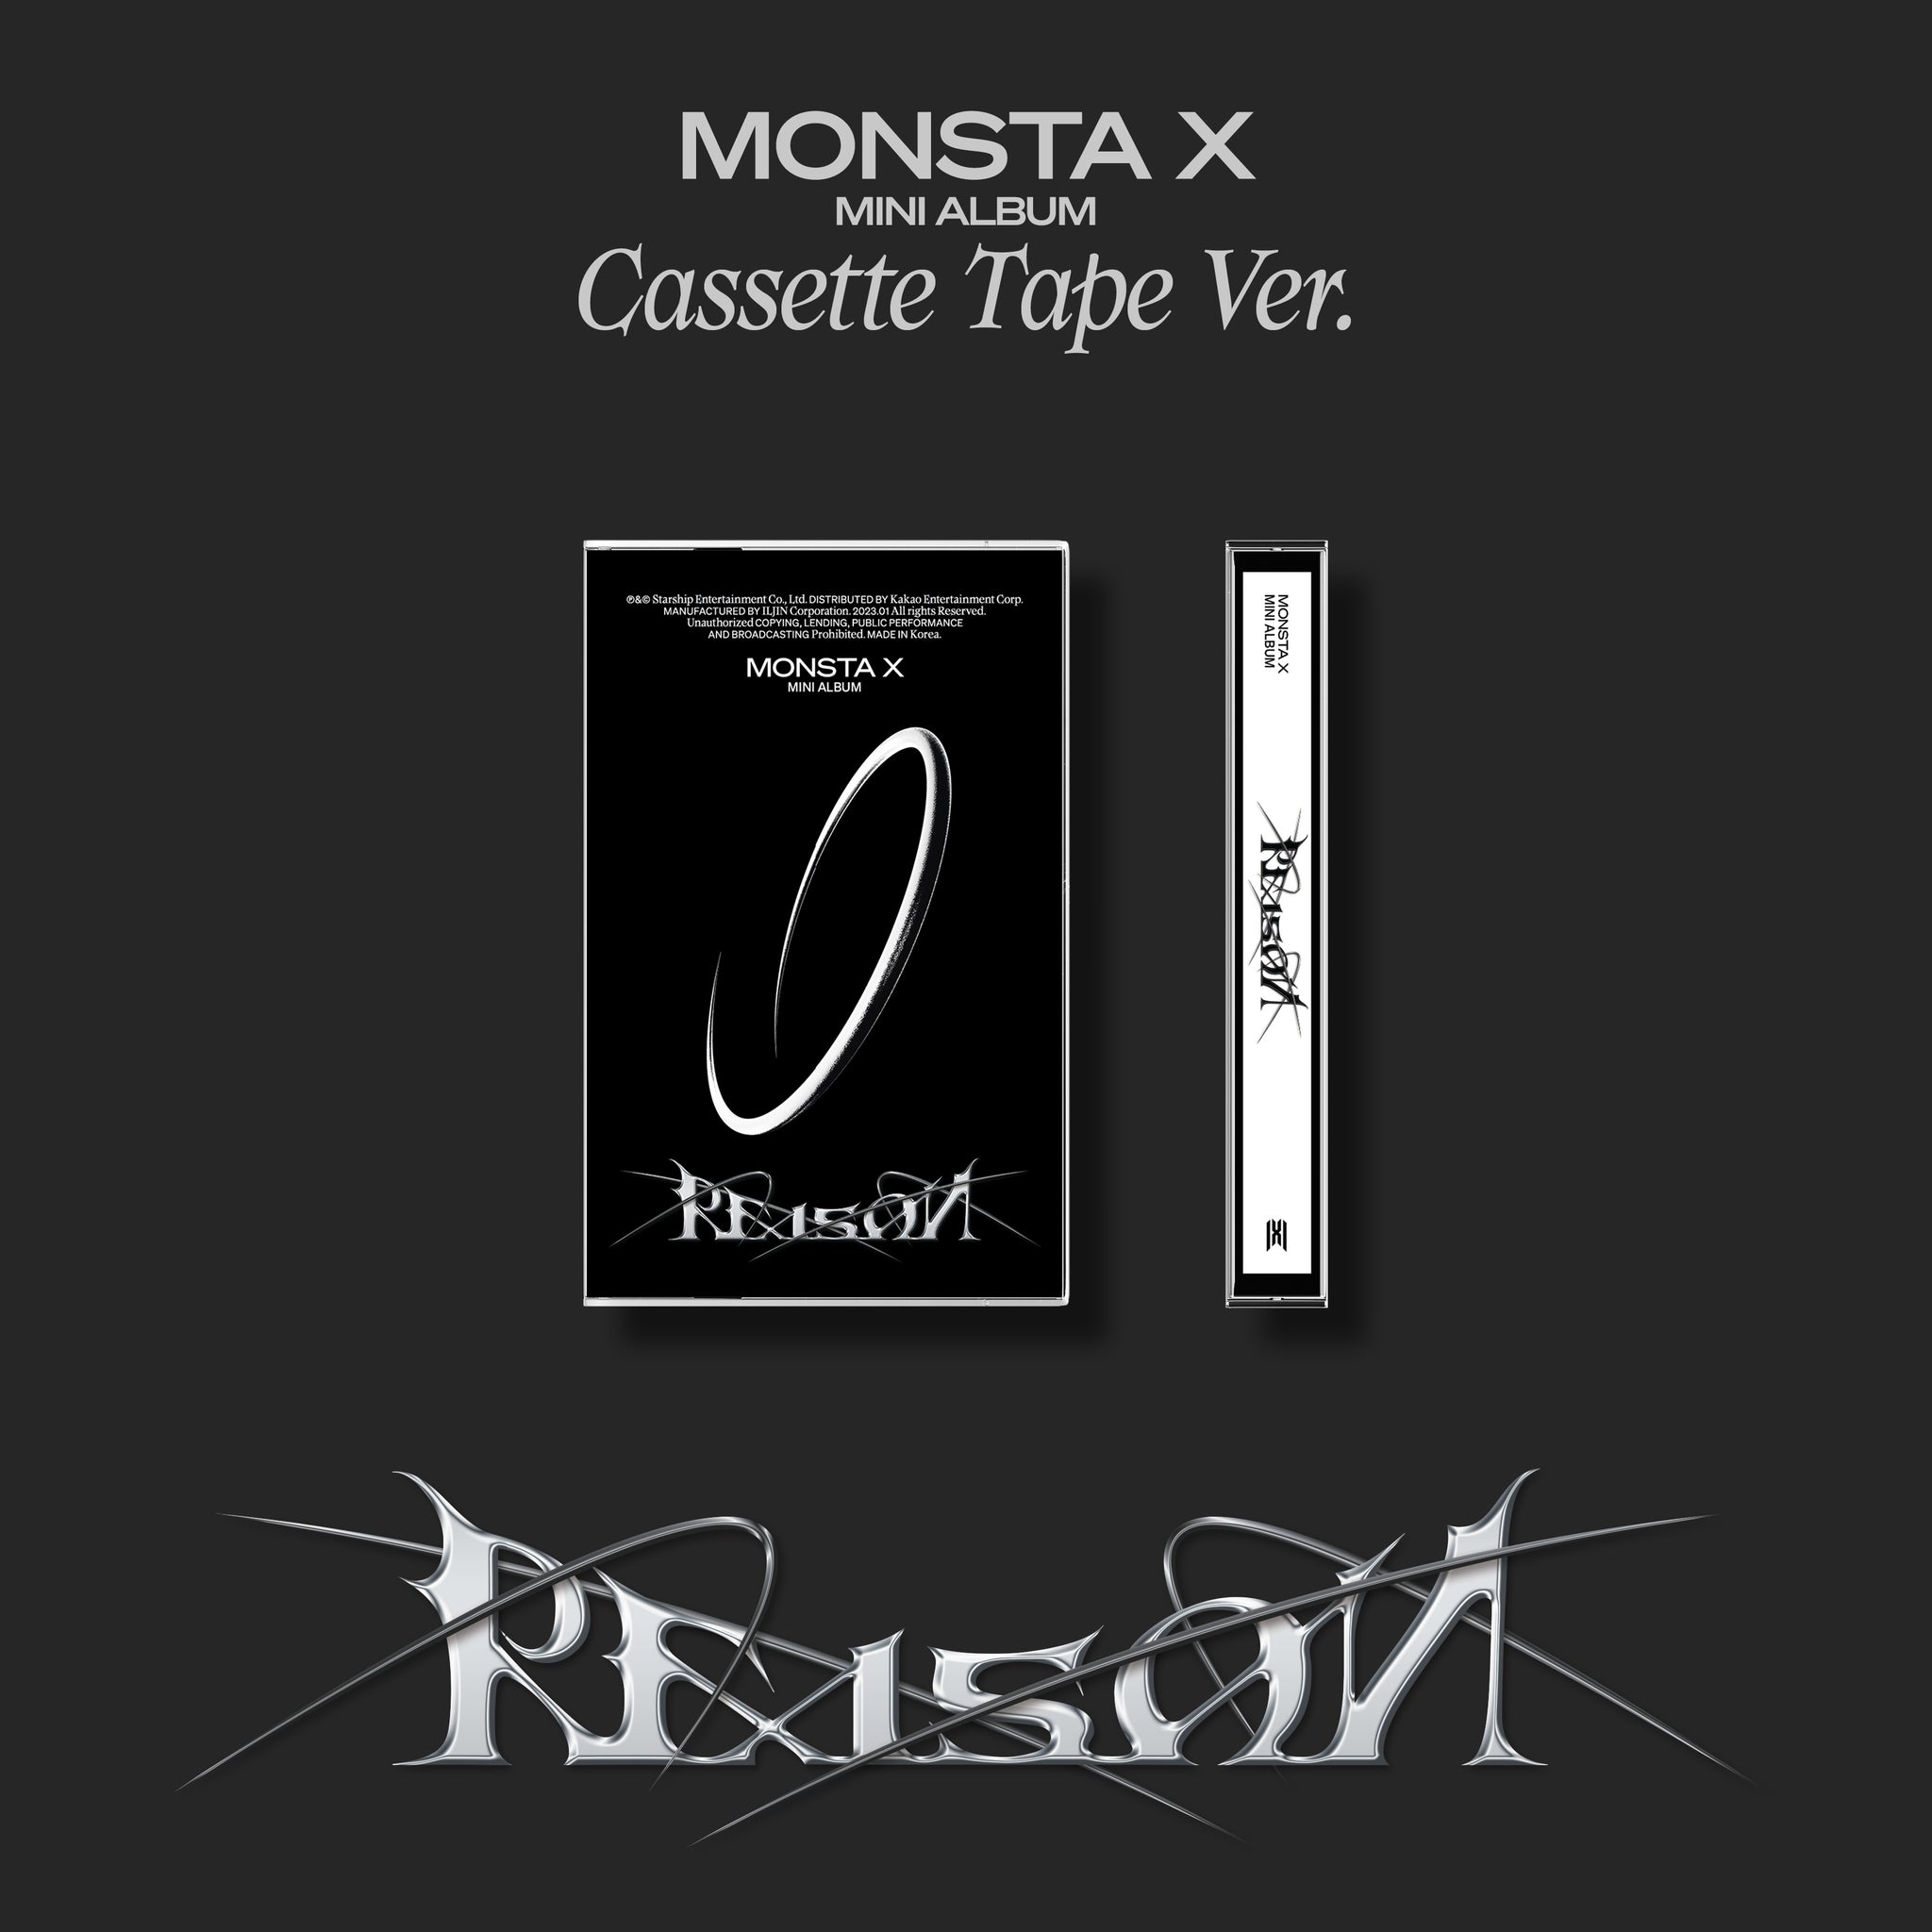 MONSTA X 12TH MINI ALBUM 'REASON' (CASSETTE TAPE) COVER